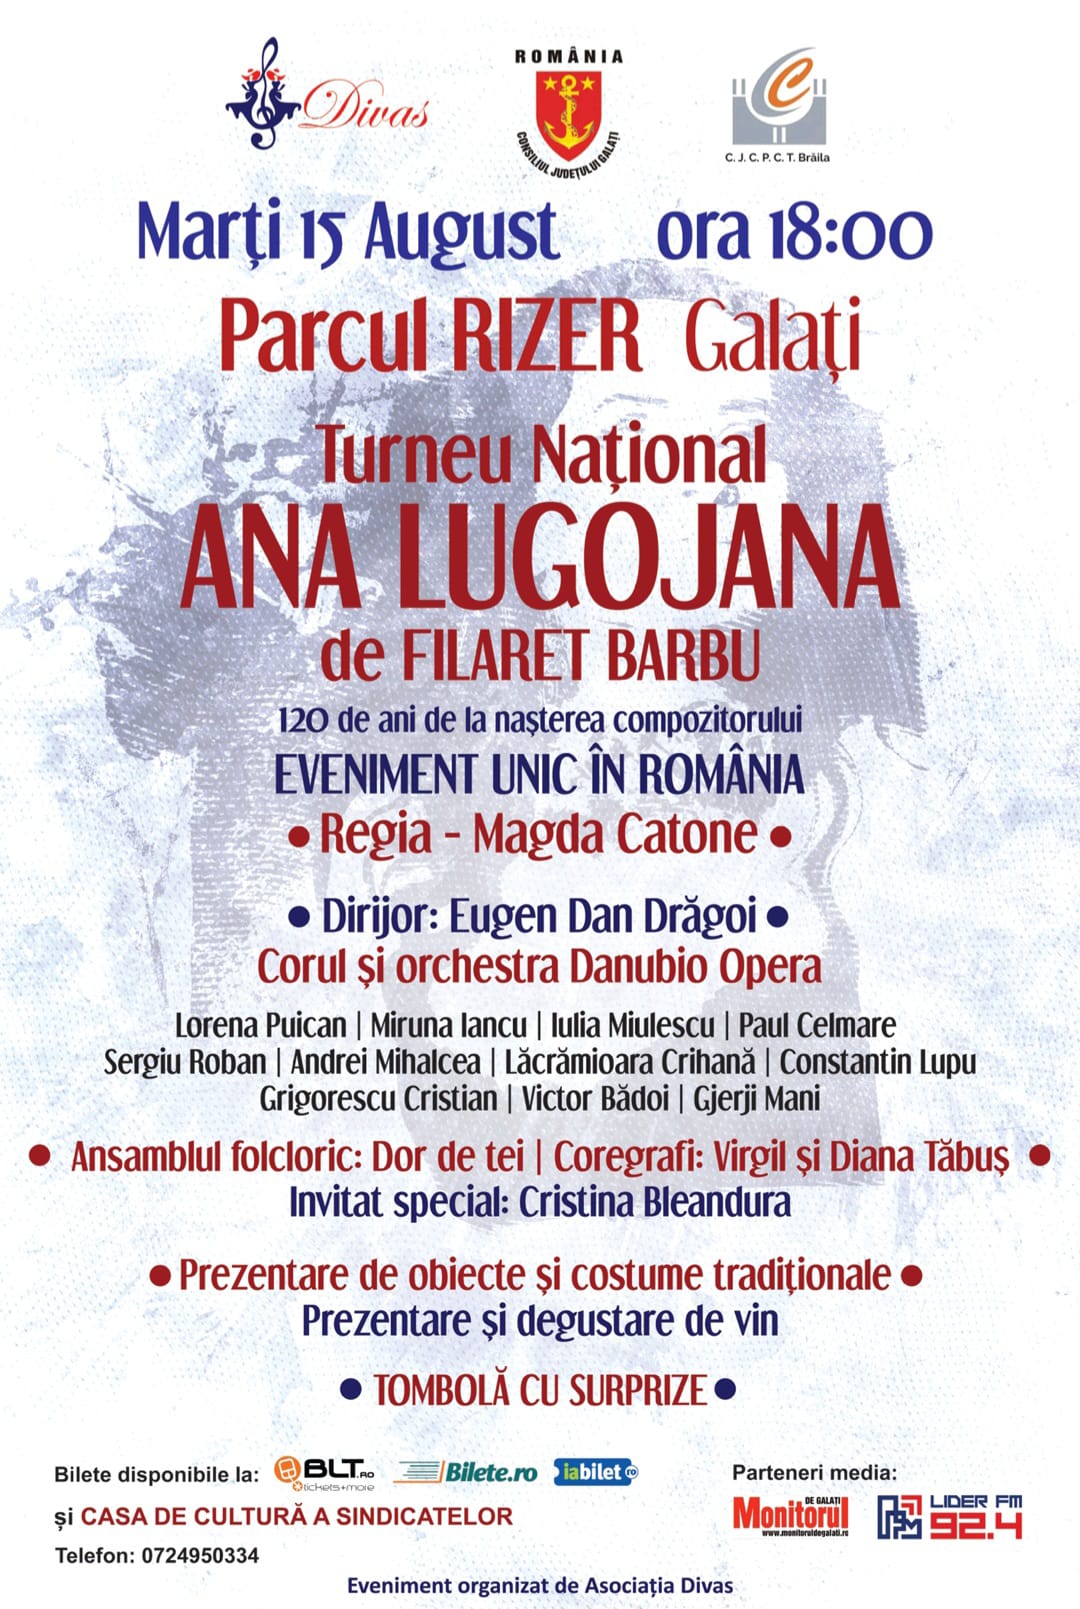 Spectacolul "Ana Lugojana", un eveniment unic în România, în curând la Galaţi